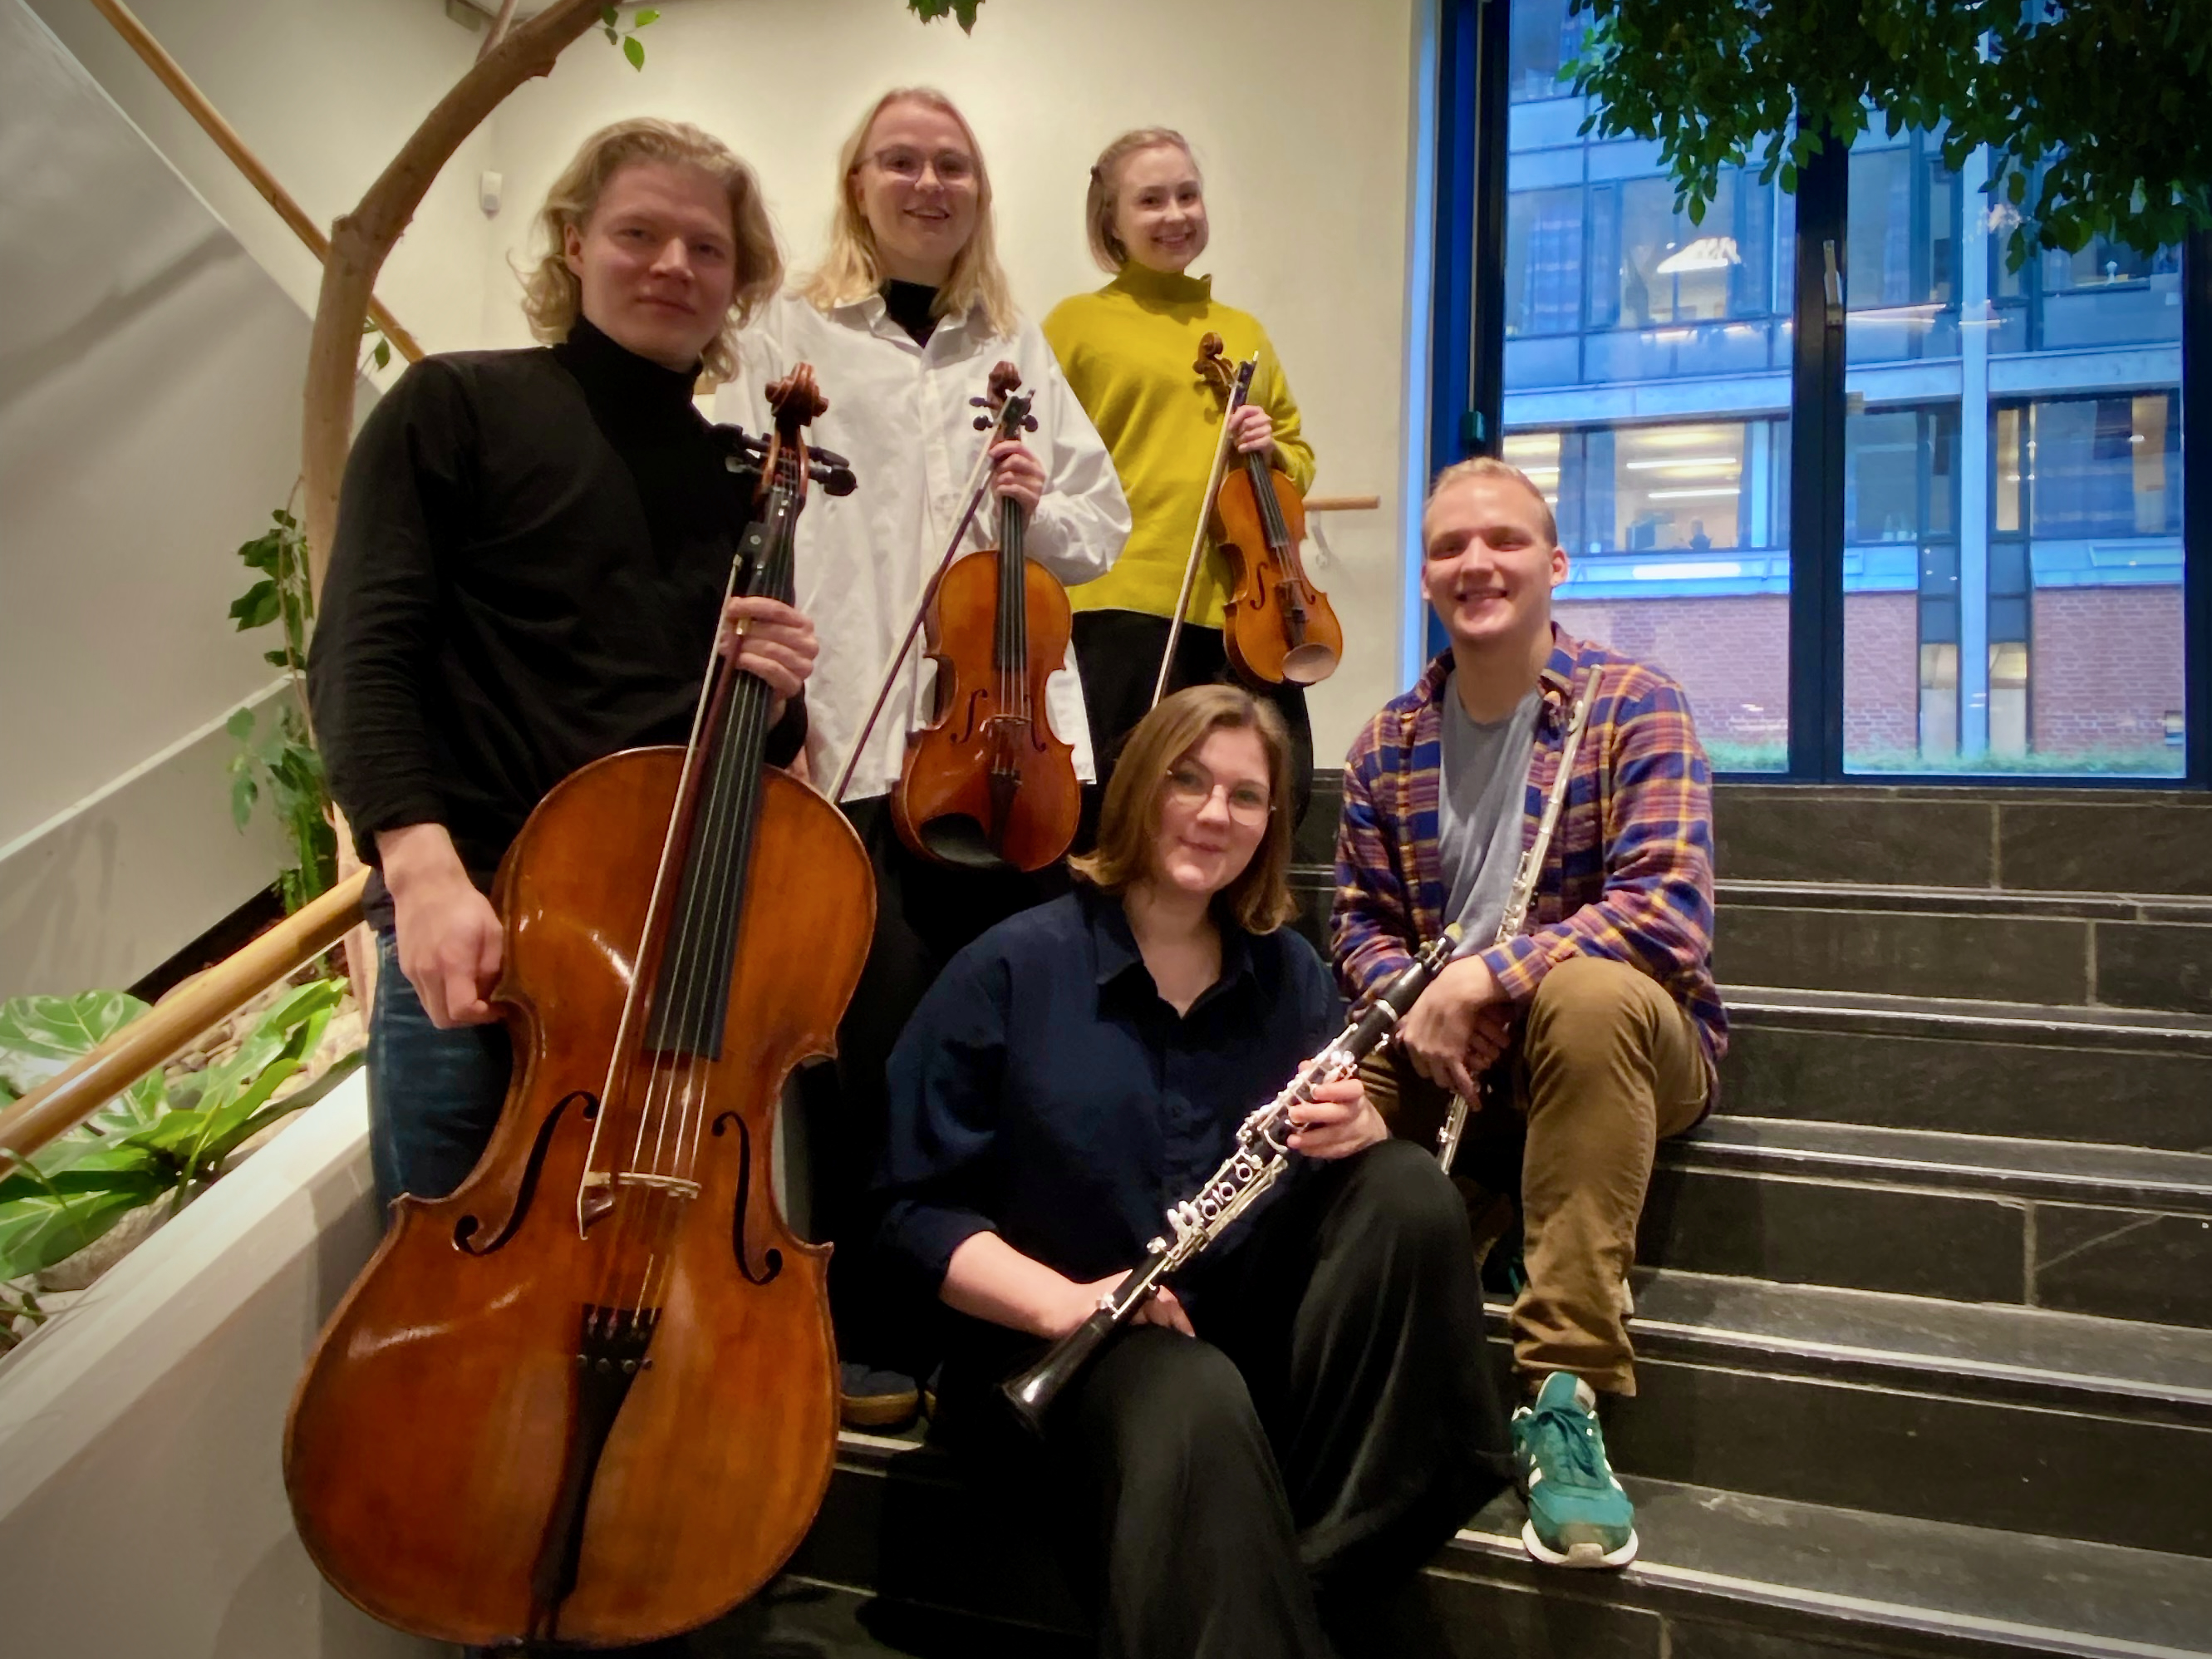 Viisi suomalaista musiikin opiskelijaa ryhmäkuvassa soittimiensa kanssa.